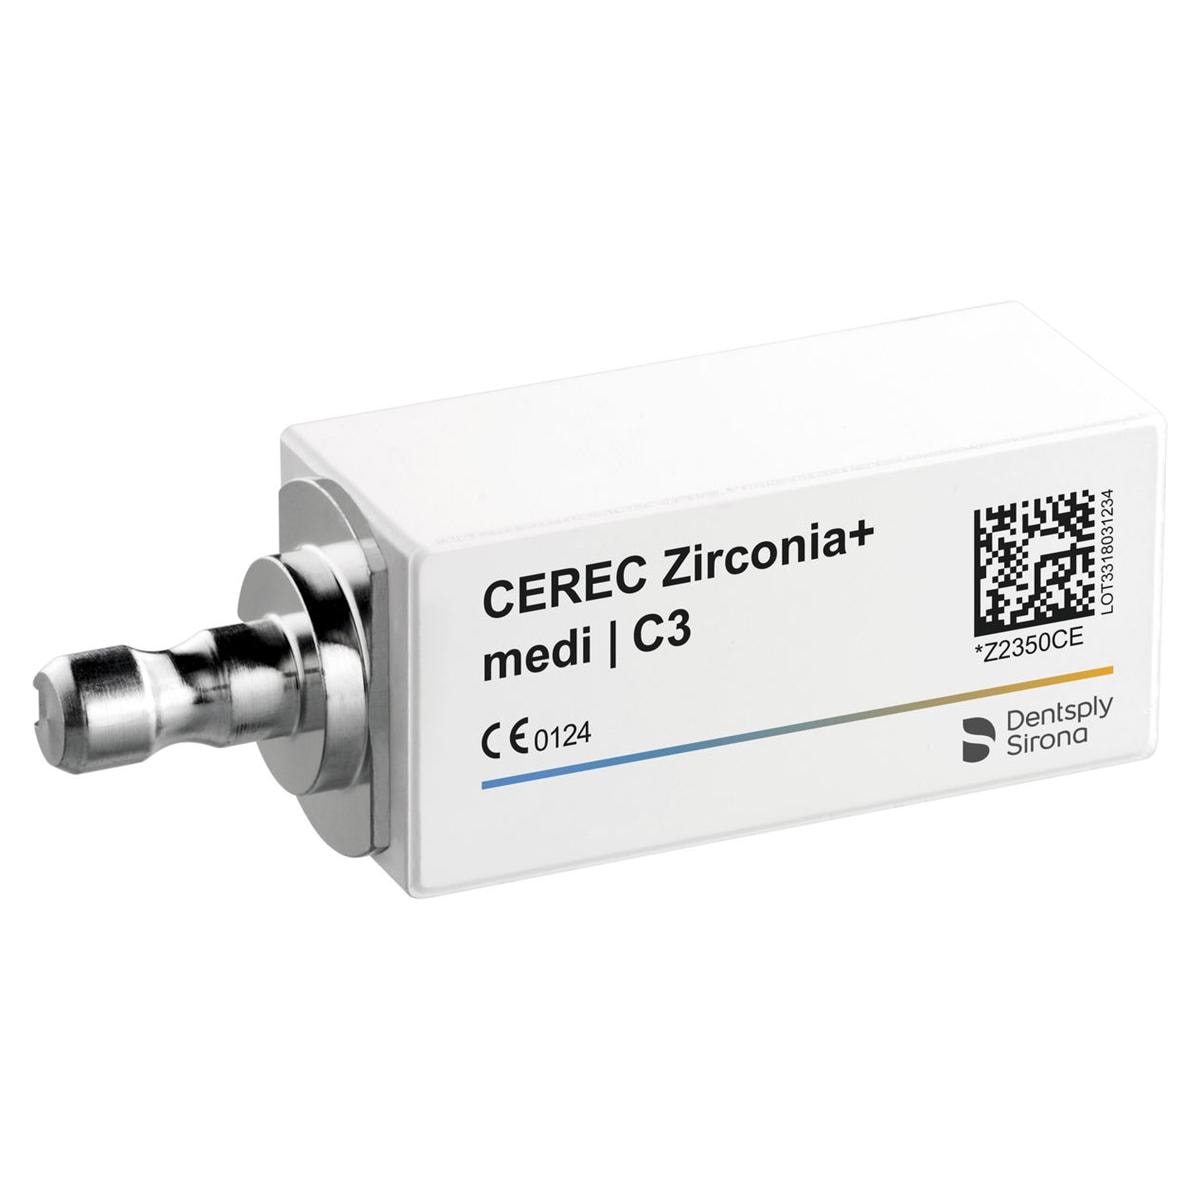 CEREC Zirconia+ medi - C3, 3 pcs